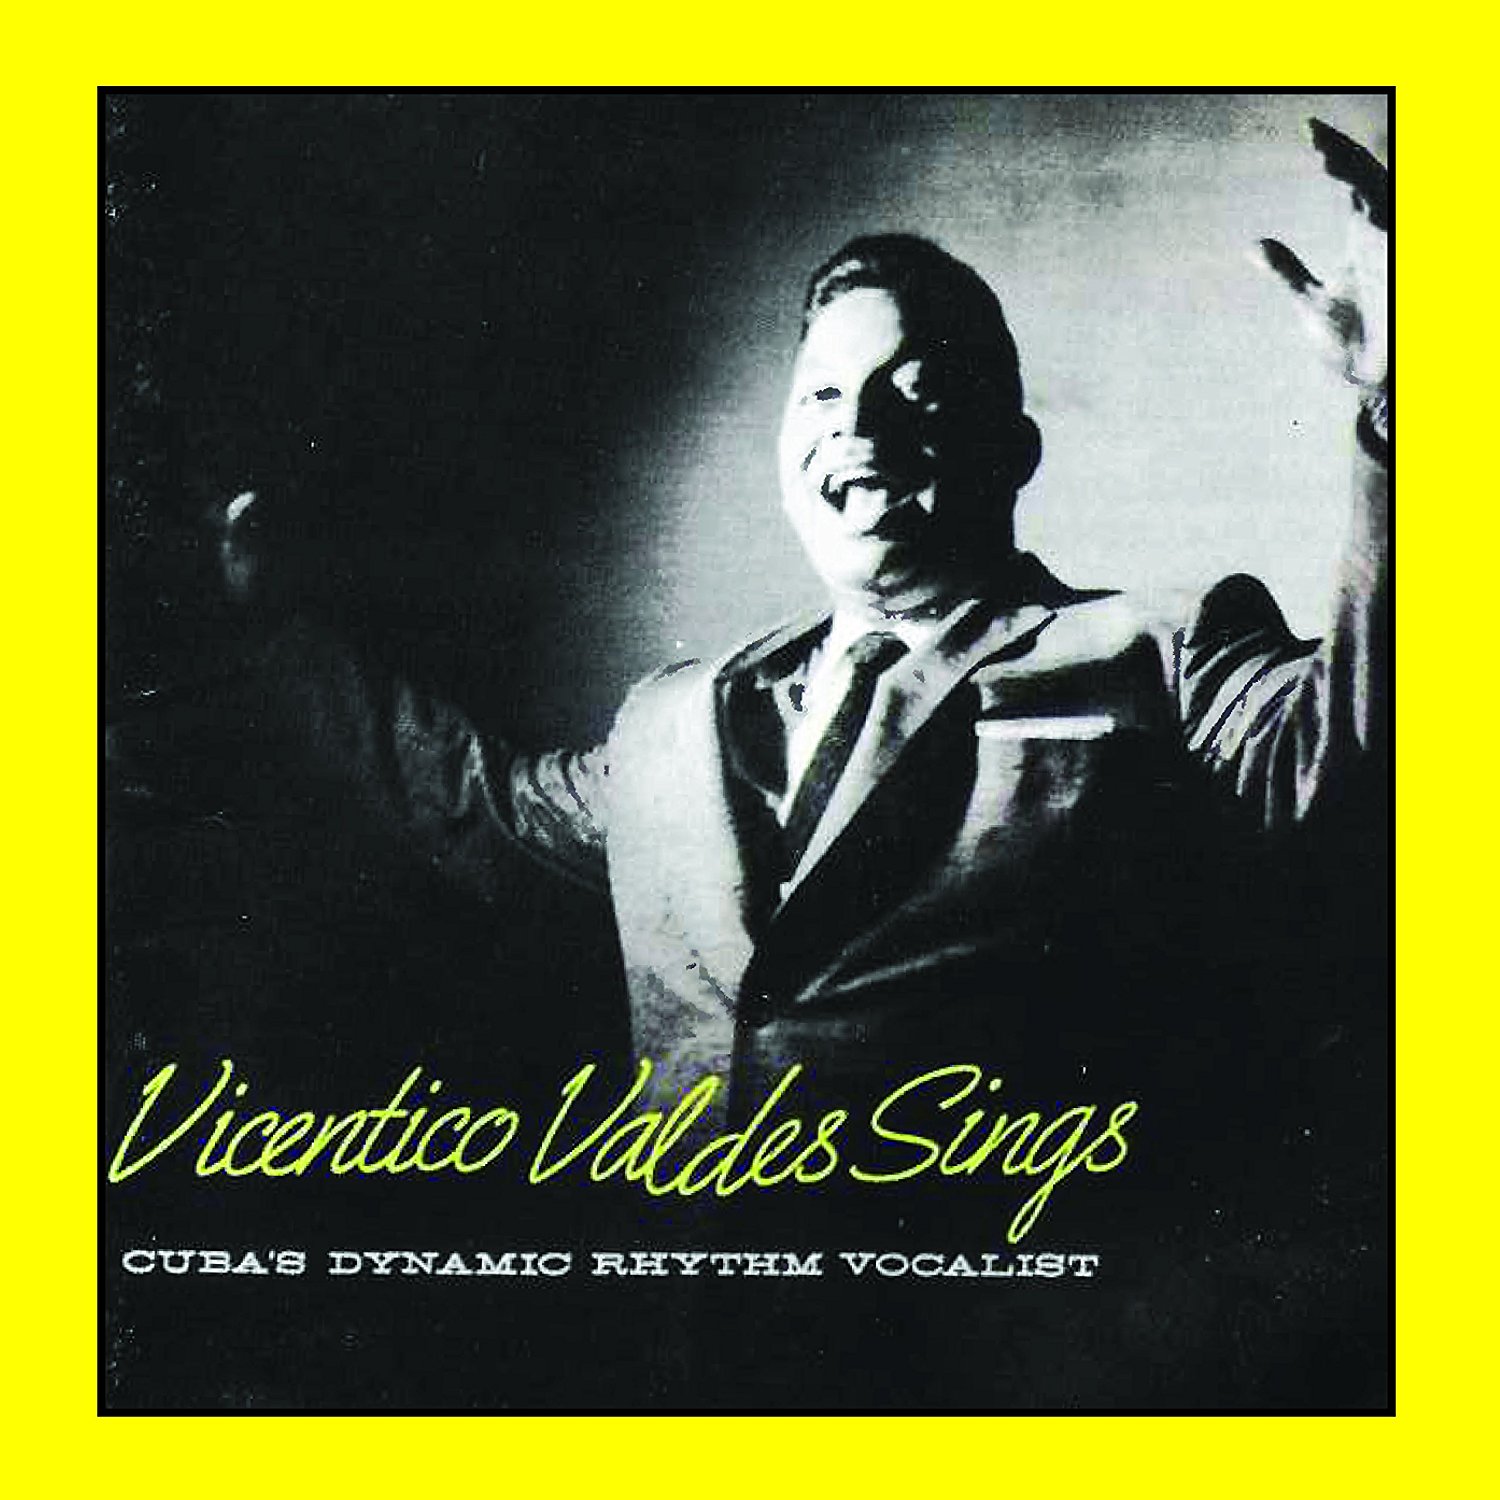 VICENTICO VALDES / ビセンティコ・バルデス / VICENTICO VALDES SINGS